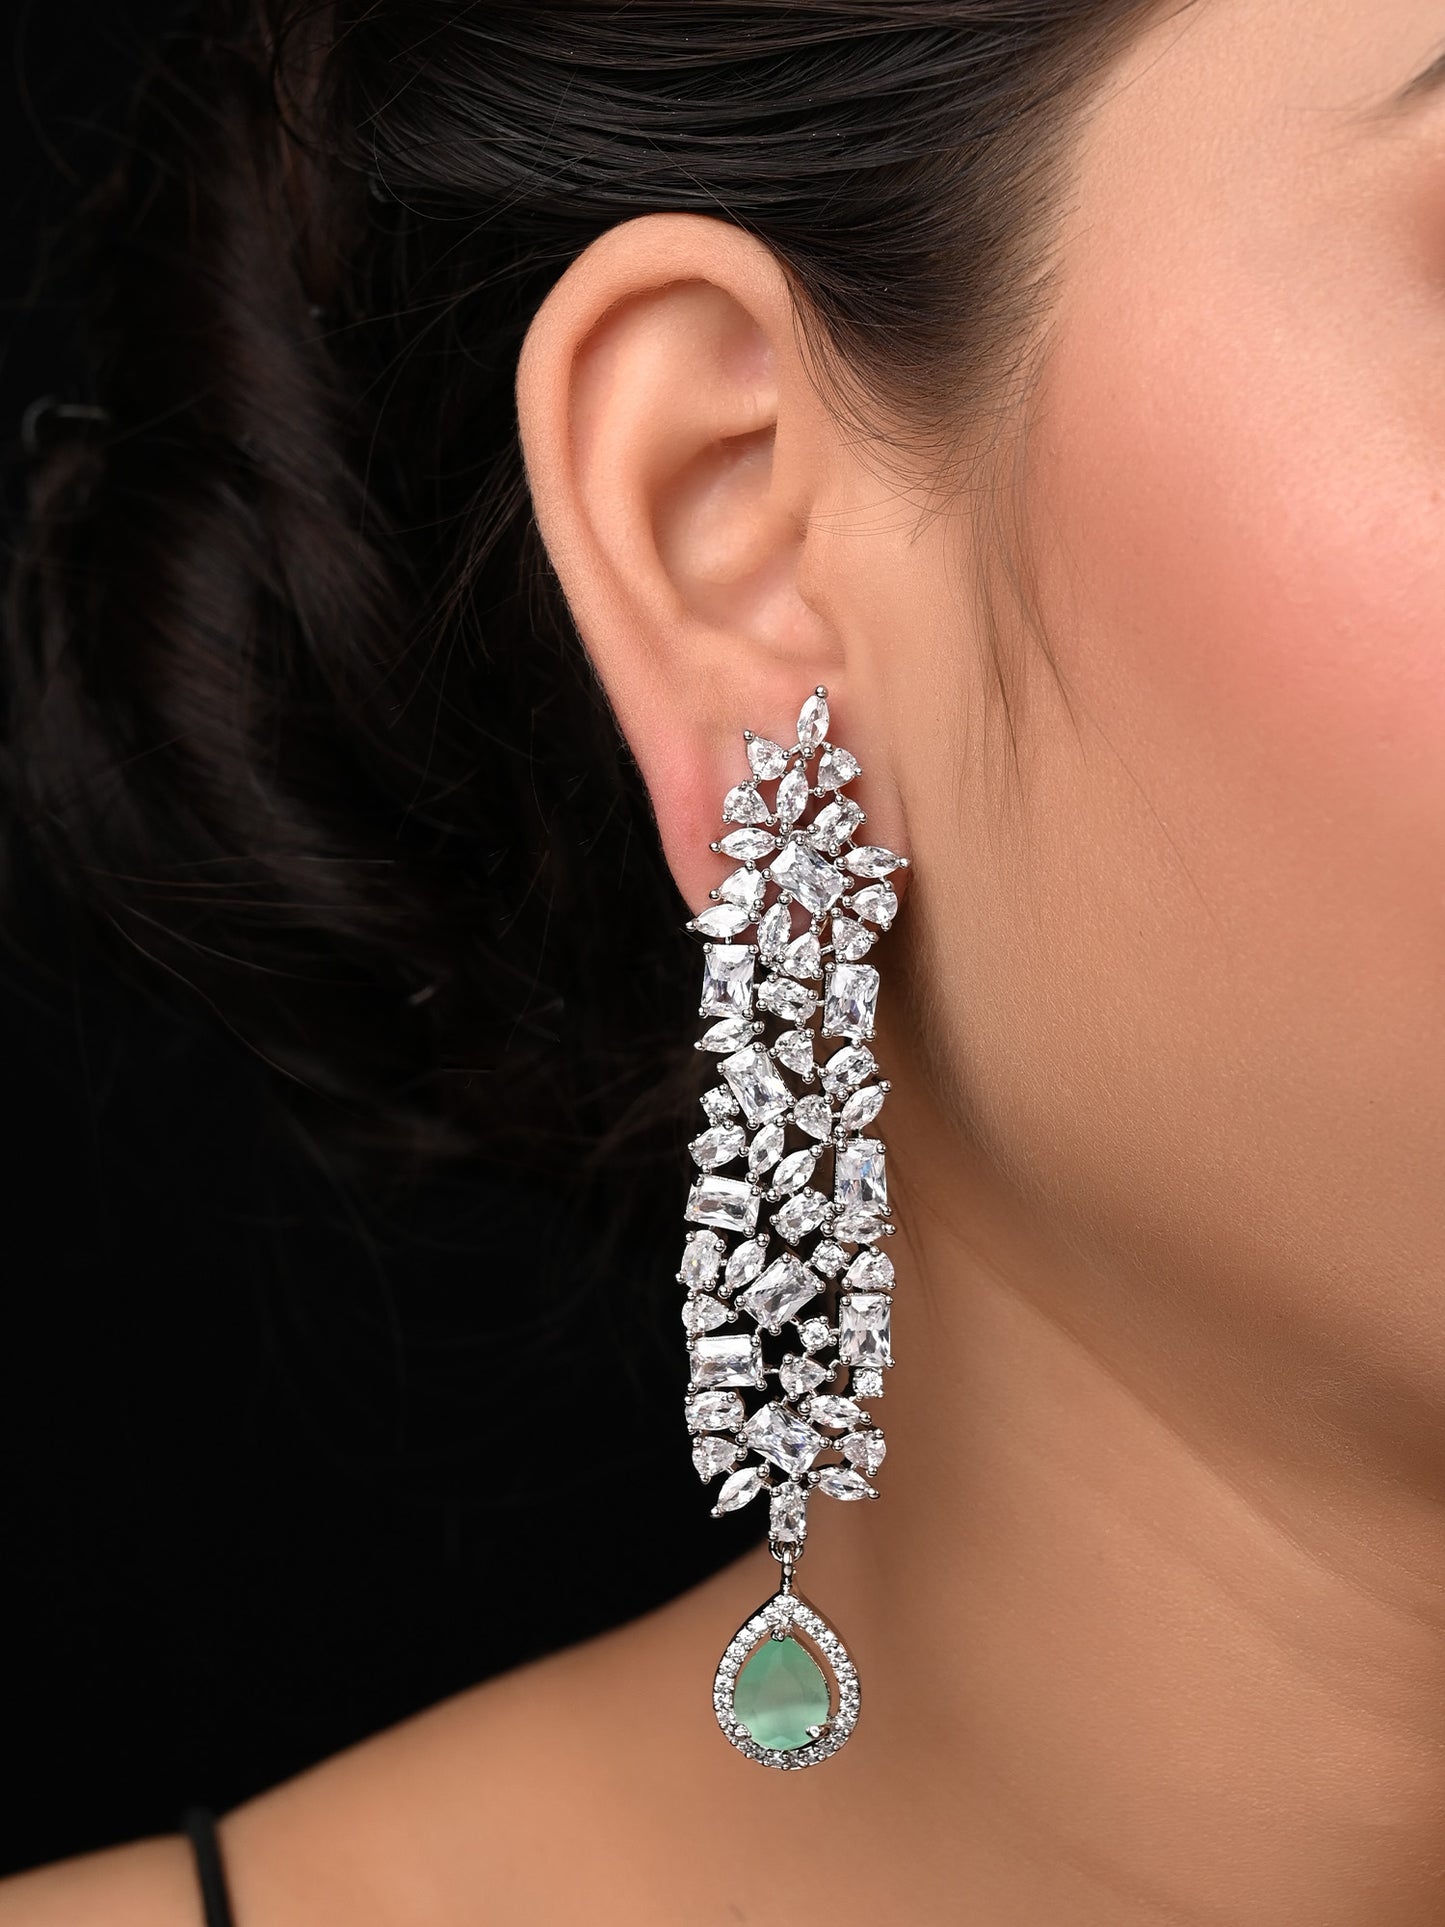 An Alluring Diamond Long Earrings